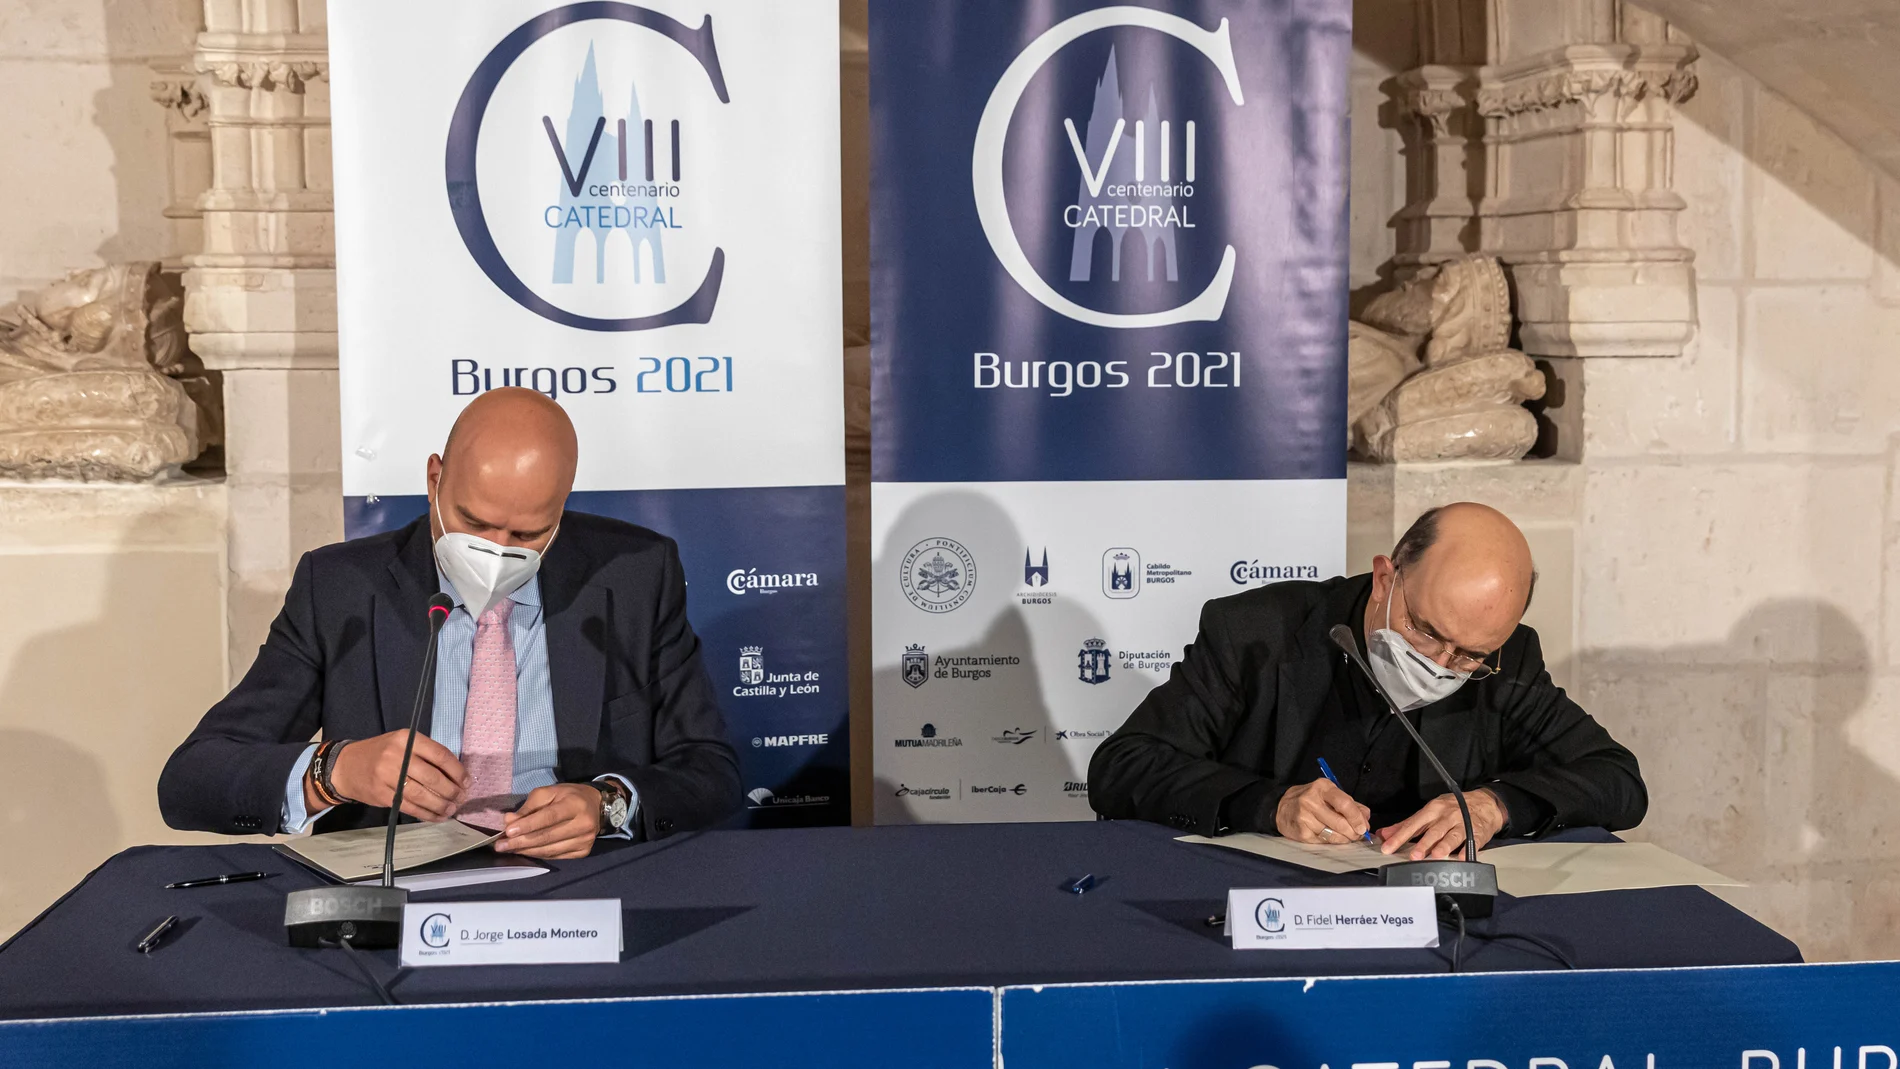 El director general de Radio Televisión de Castilla y León, Jorge Losada, y el presidente de la Fundación VIII Centenario de la Catedral. Burgos 2021, Fidel Herráez, firman el convenio